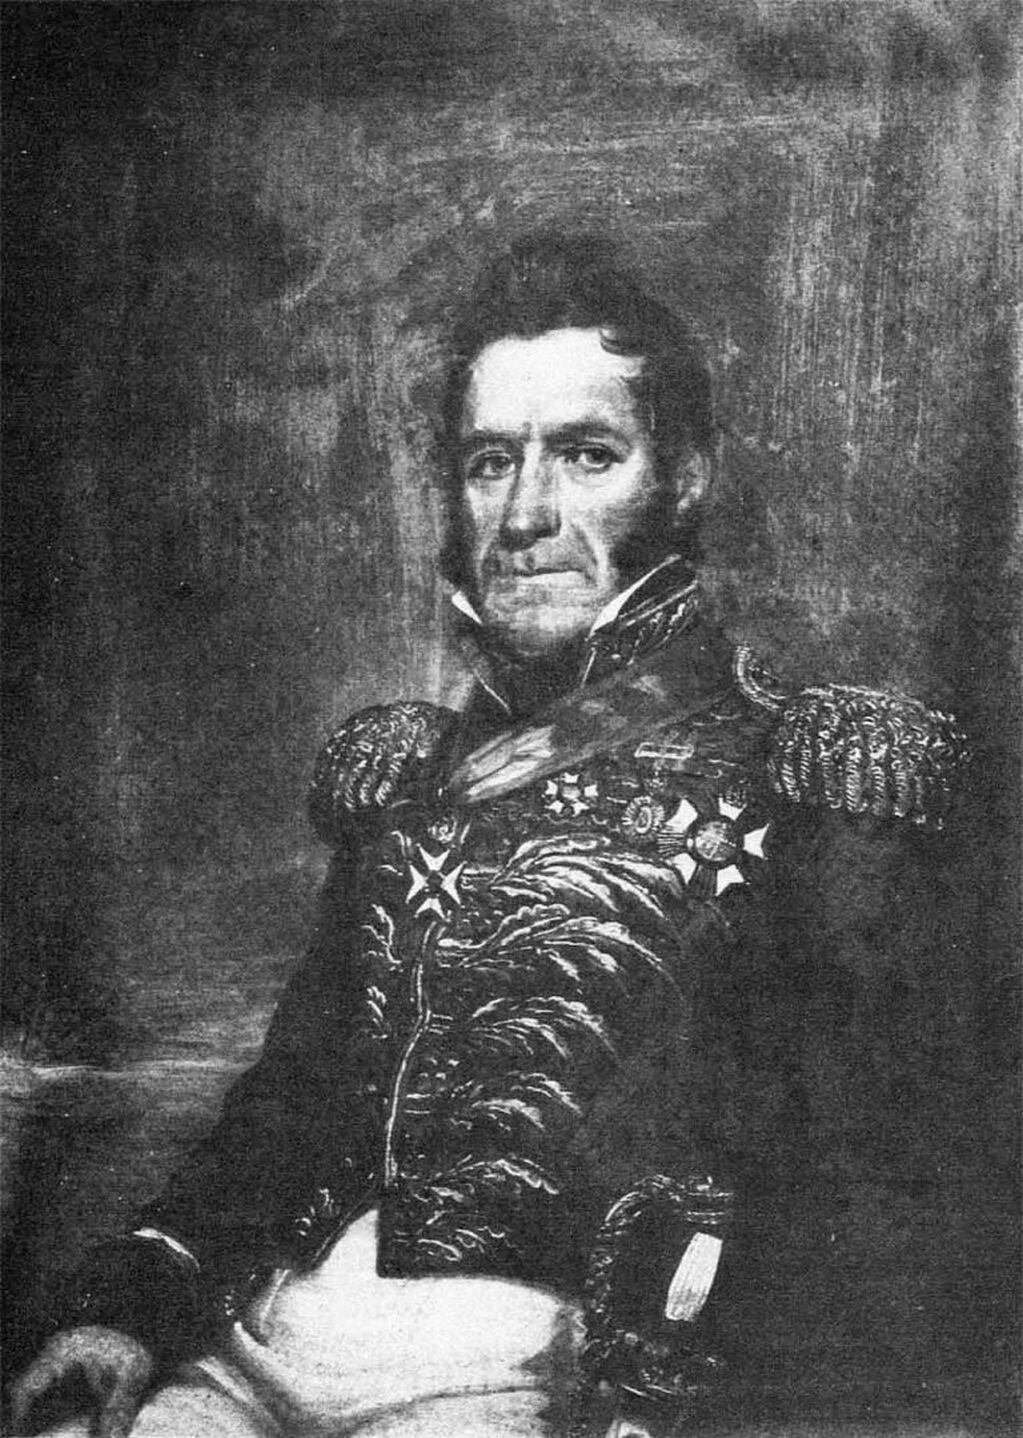 David Jewett, Comandante de la Fragata Heroína. El 6 de noviembre de 1820 izó la bandera nacional, reclamando formalmente los territorios como parte de la Argentina y advirtió a los navíos foqueros y pesqueros que sus actividades eran ilegales y que dañaban los recursos naturales locales.